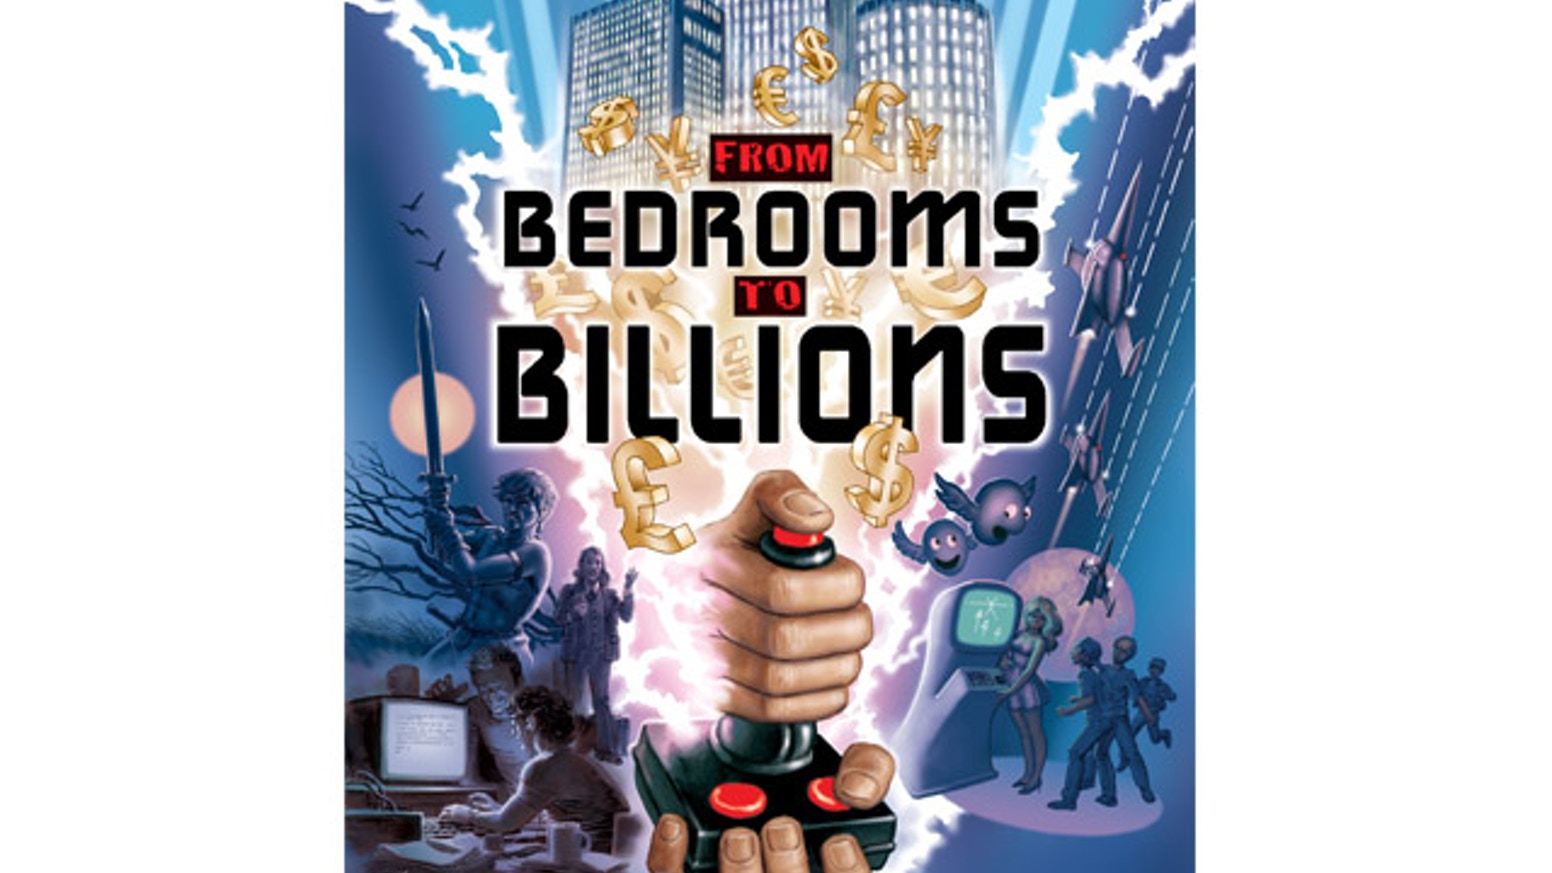 Bedrooms to Billions